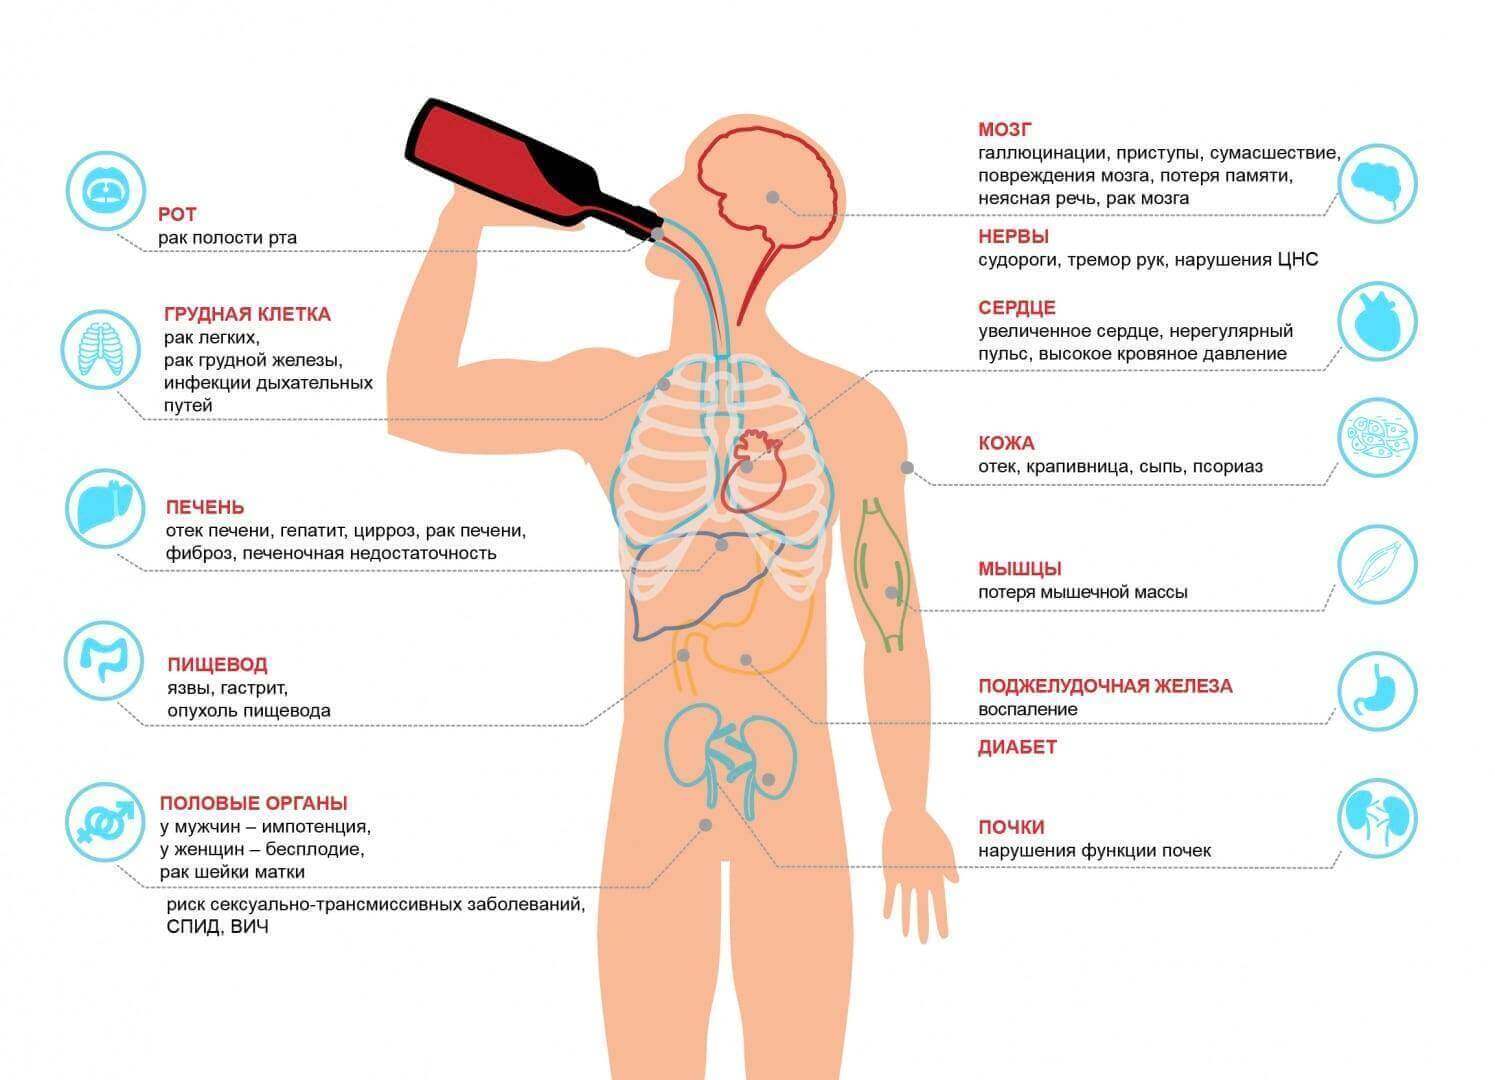 Поражение людей происходит. Влияние алкоголя на организм человека схема. Влияние алкоголя на органы. Воздействие алкоголя на организм. Алкоголизм влияние на органы.